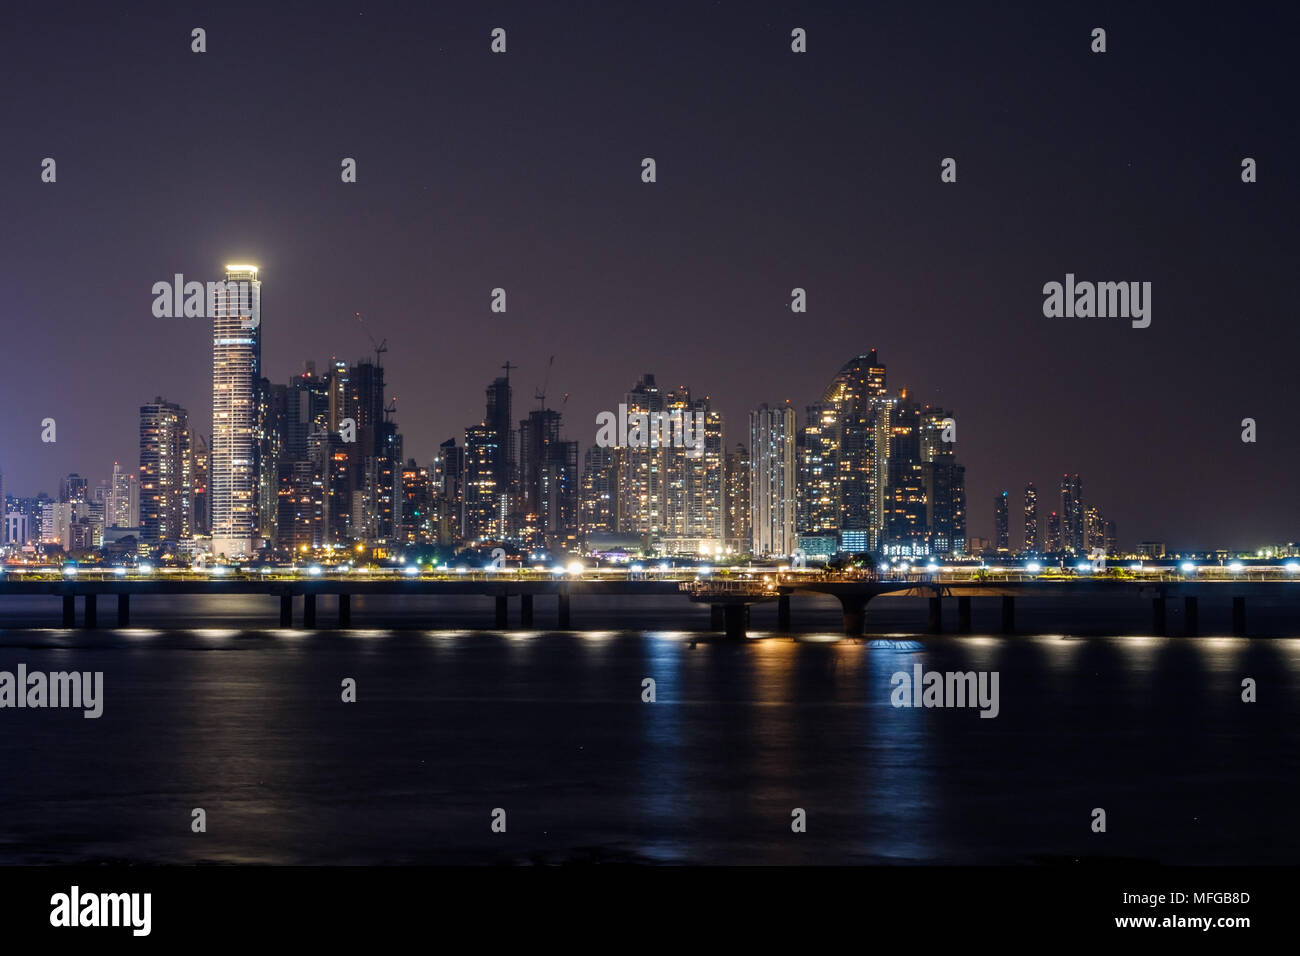 City Skyline bei Nacht - modernes Stadtbild von Panama City bei Nacht beleuchteten Wolkenkratzer Gebäude - glühende Lichter der Stadt Stockfoto